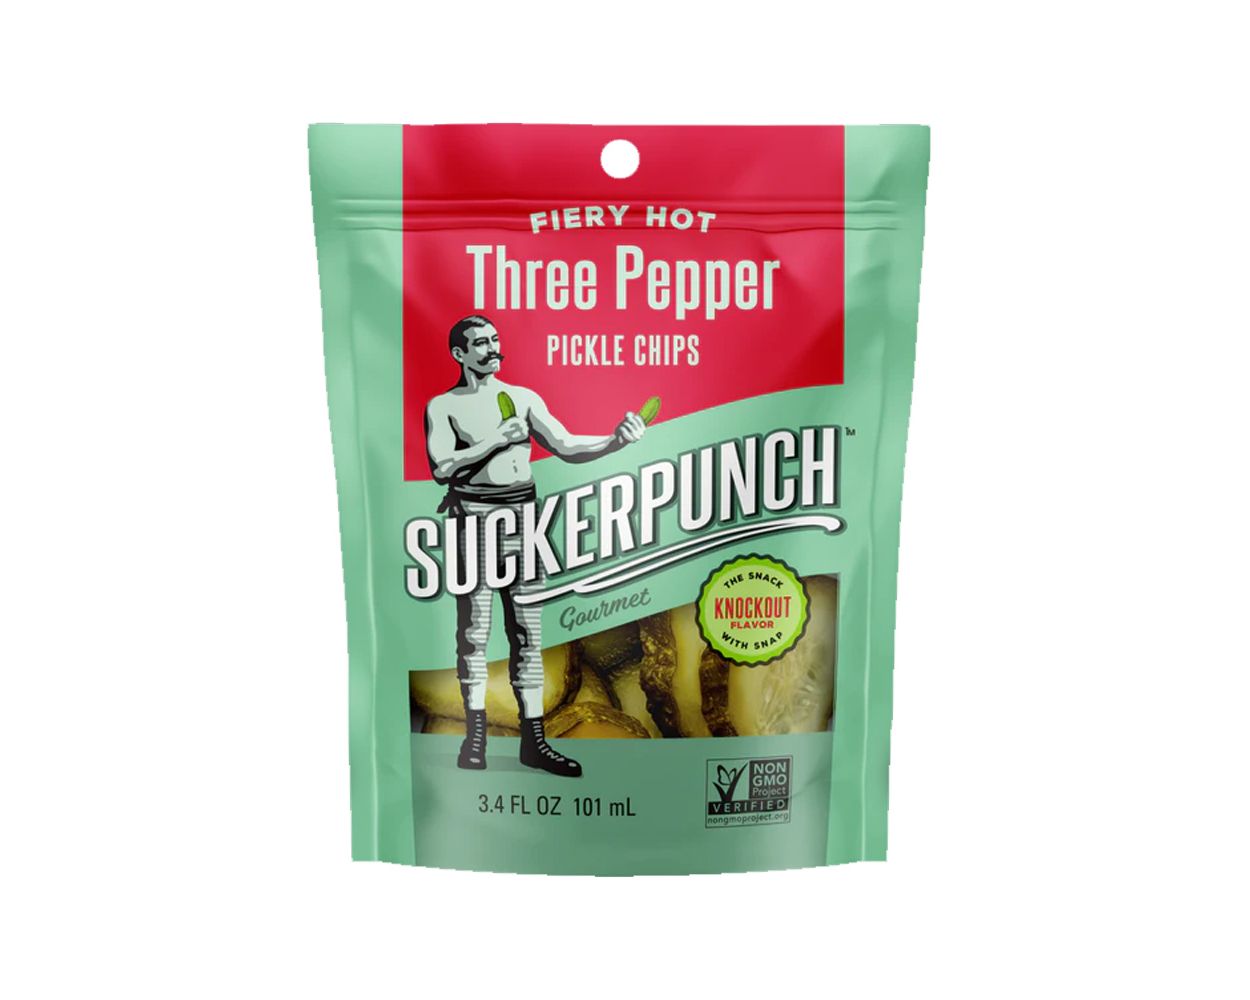 Pickles - Three Pepper Chips Snack Pack von SuckerPunch | American Heritage